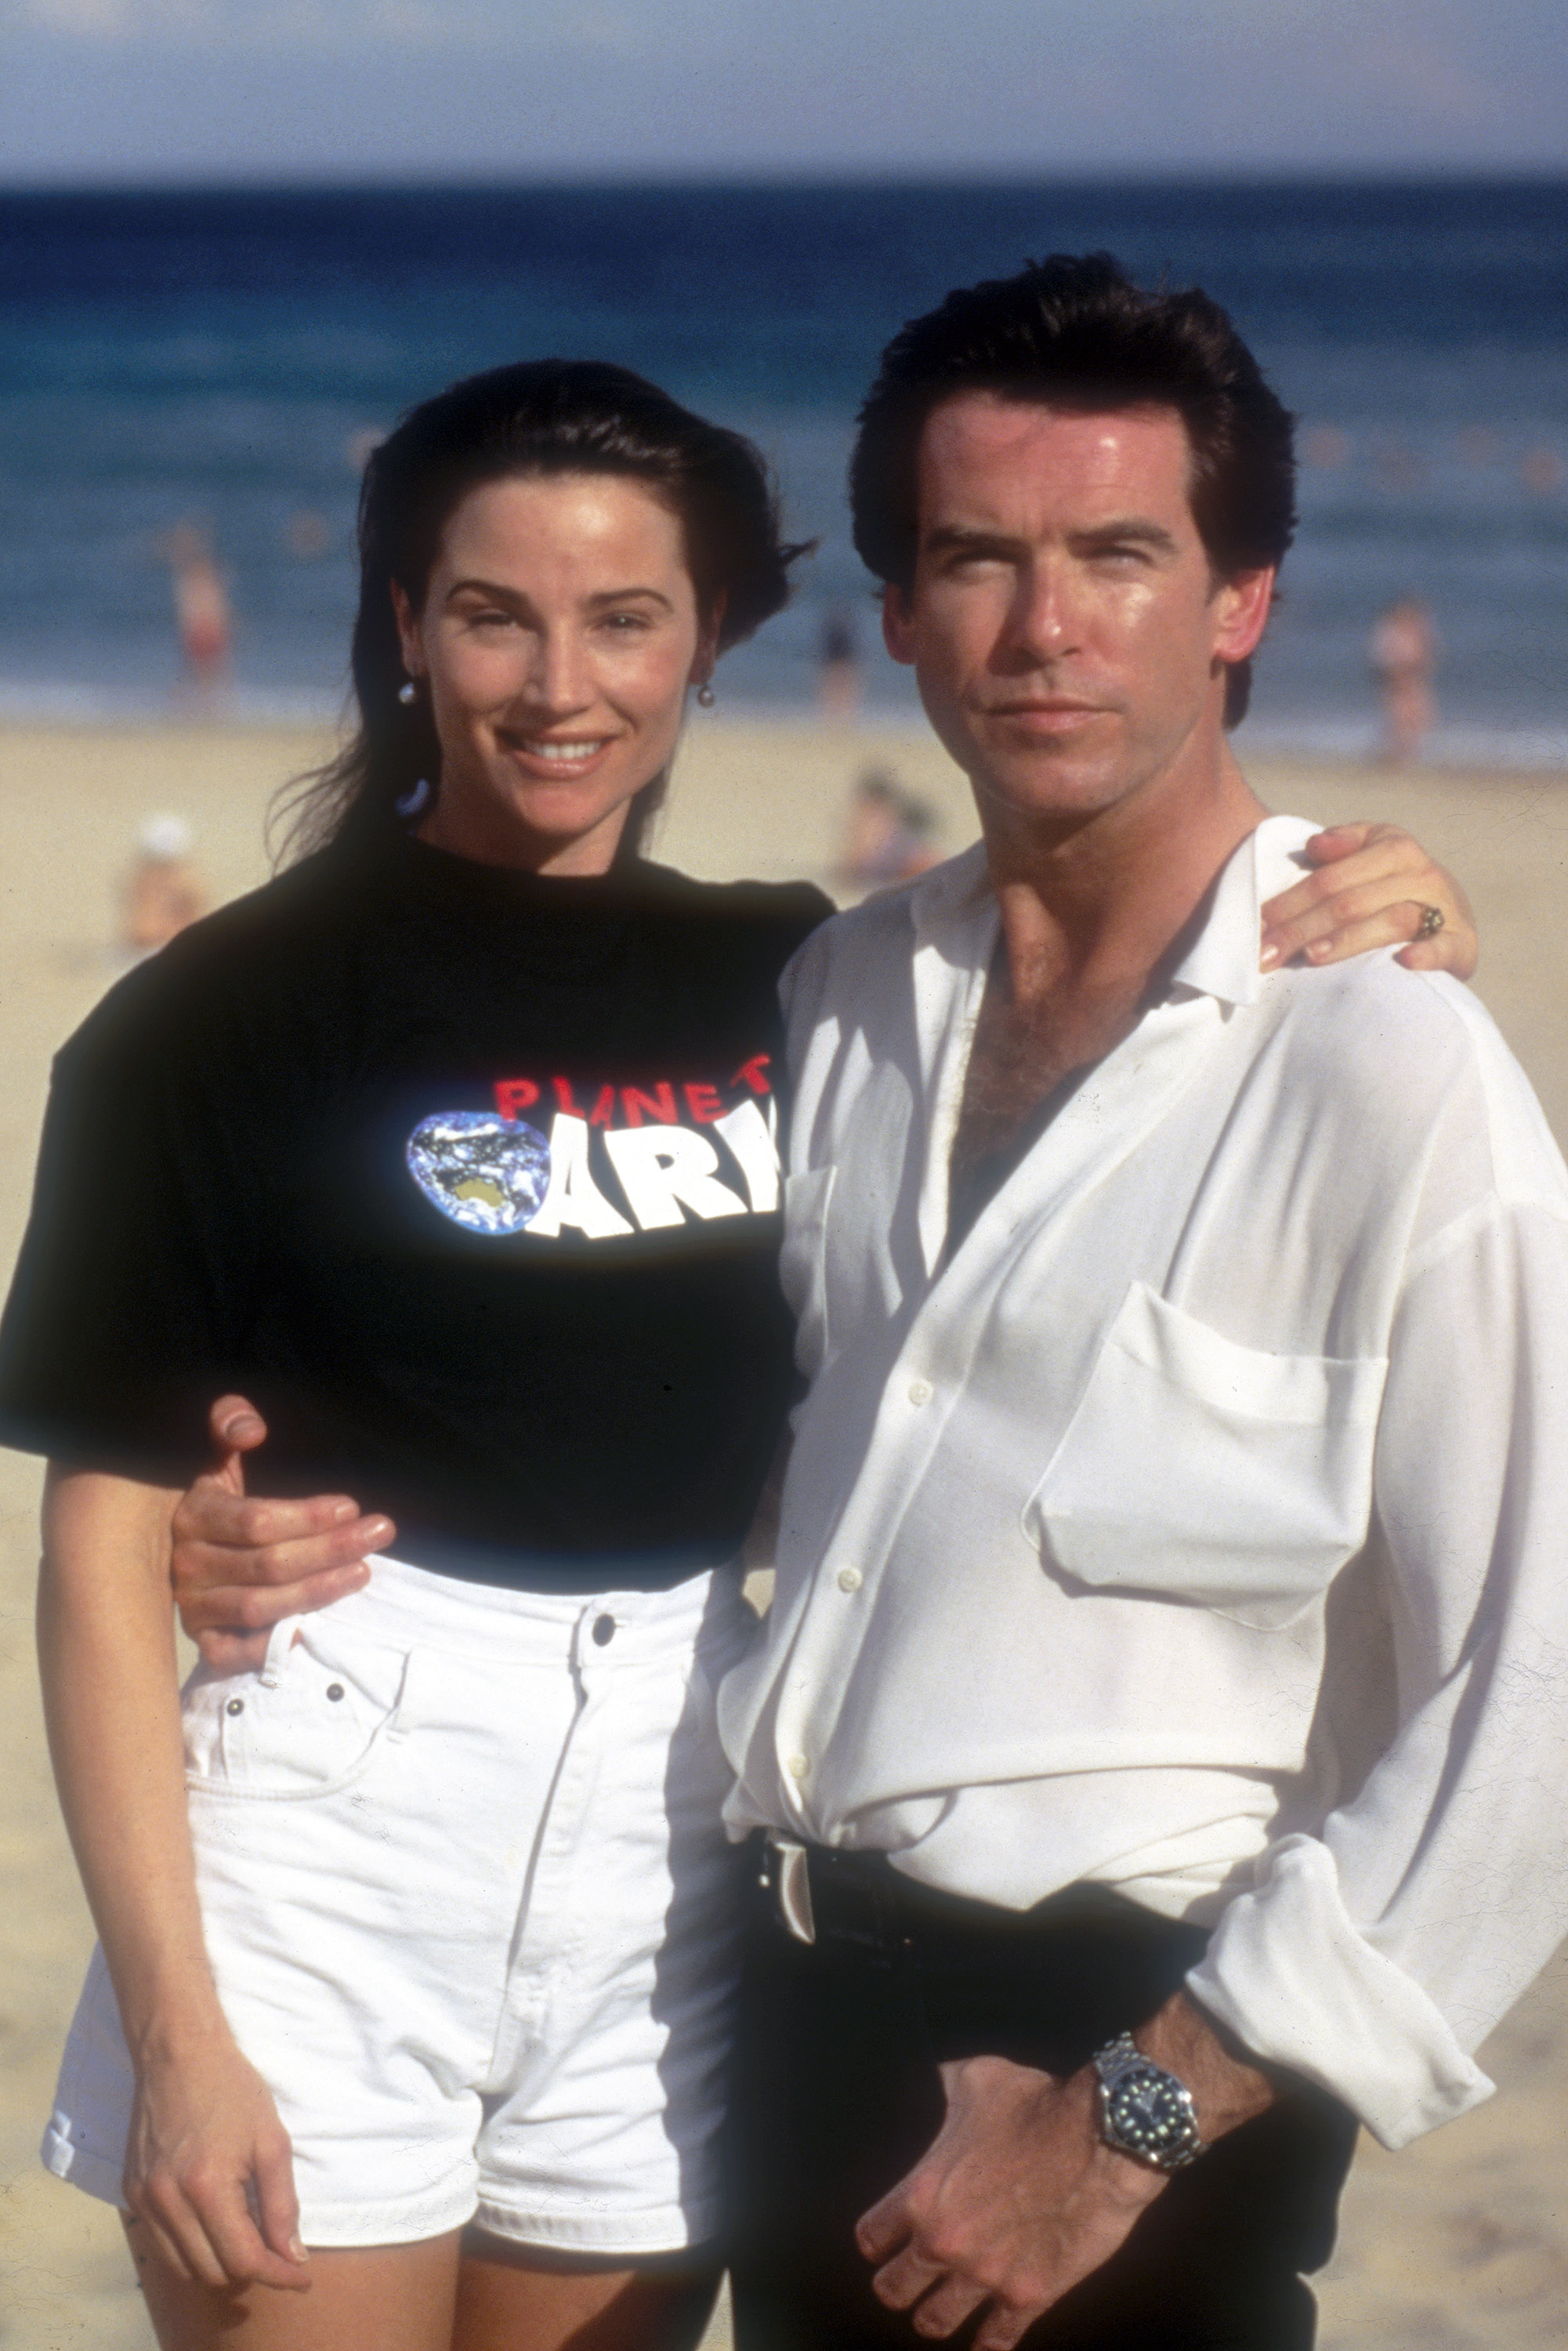 Keely Shaye Smith et Pierce Brosnan à Sydney, en Australie, pour la première de son film James Bond "Goldeneye" en 1995 | Source : Getty Images